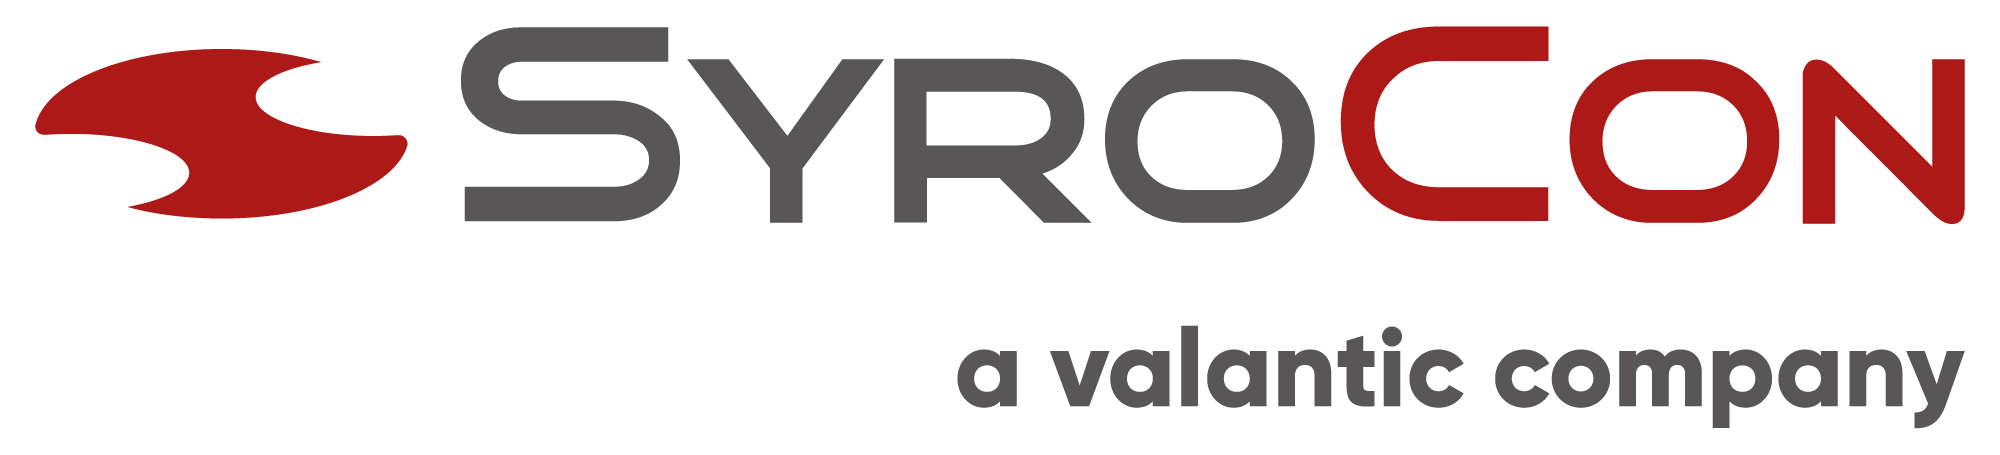 SyroCon-a-valantic-company_2000px